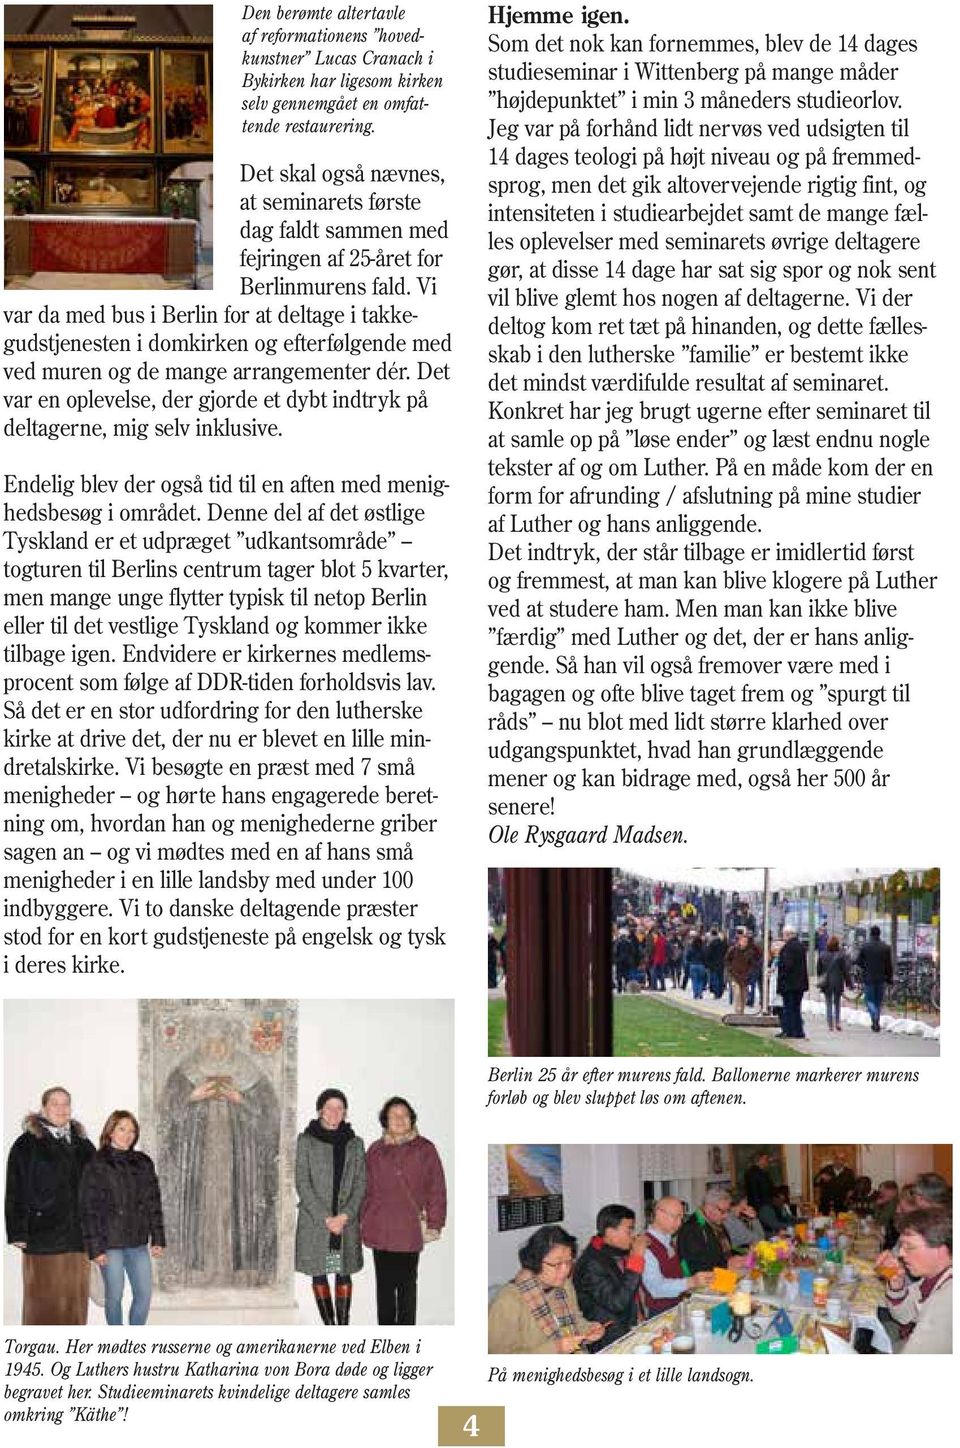 Vi var da med bus i Berlin for at deltage i takkegudstjenesten i domkirken og efterfølgende med ved muren og de mange arrangementer dér.